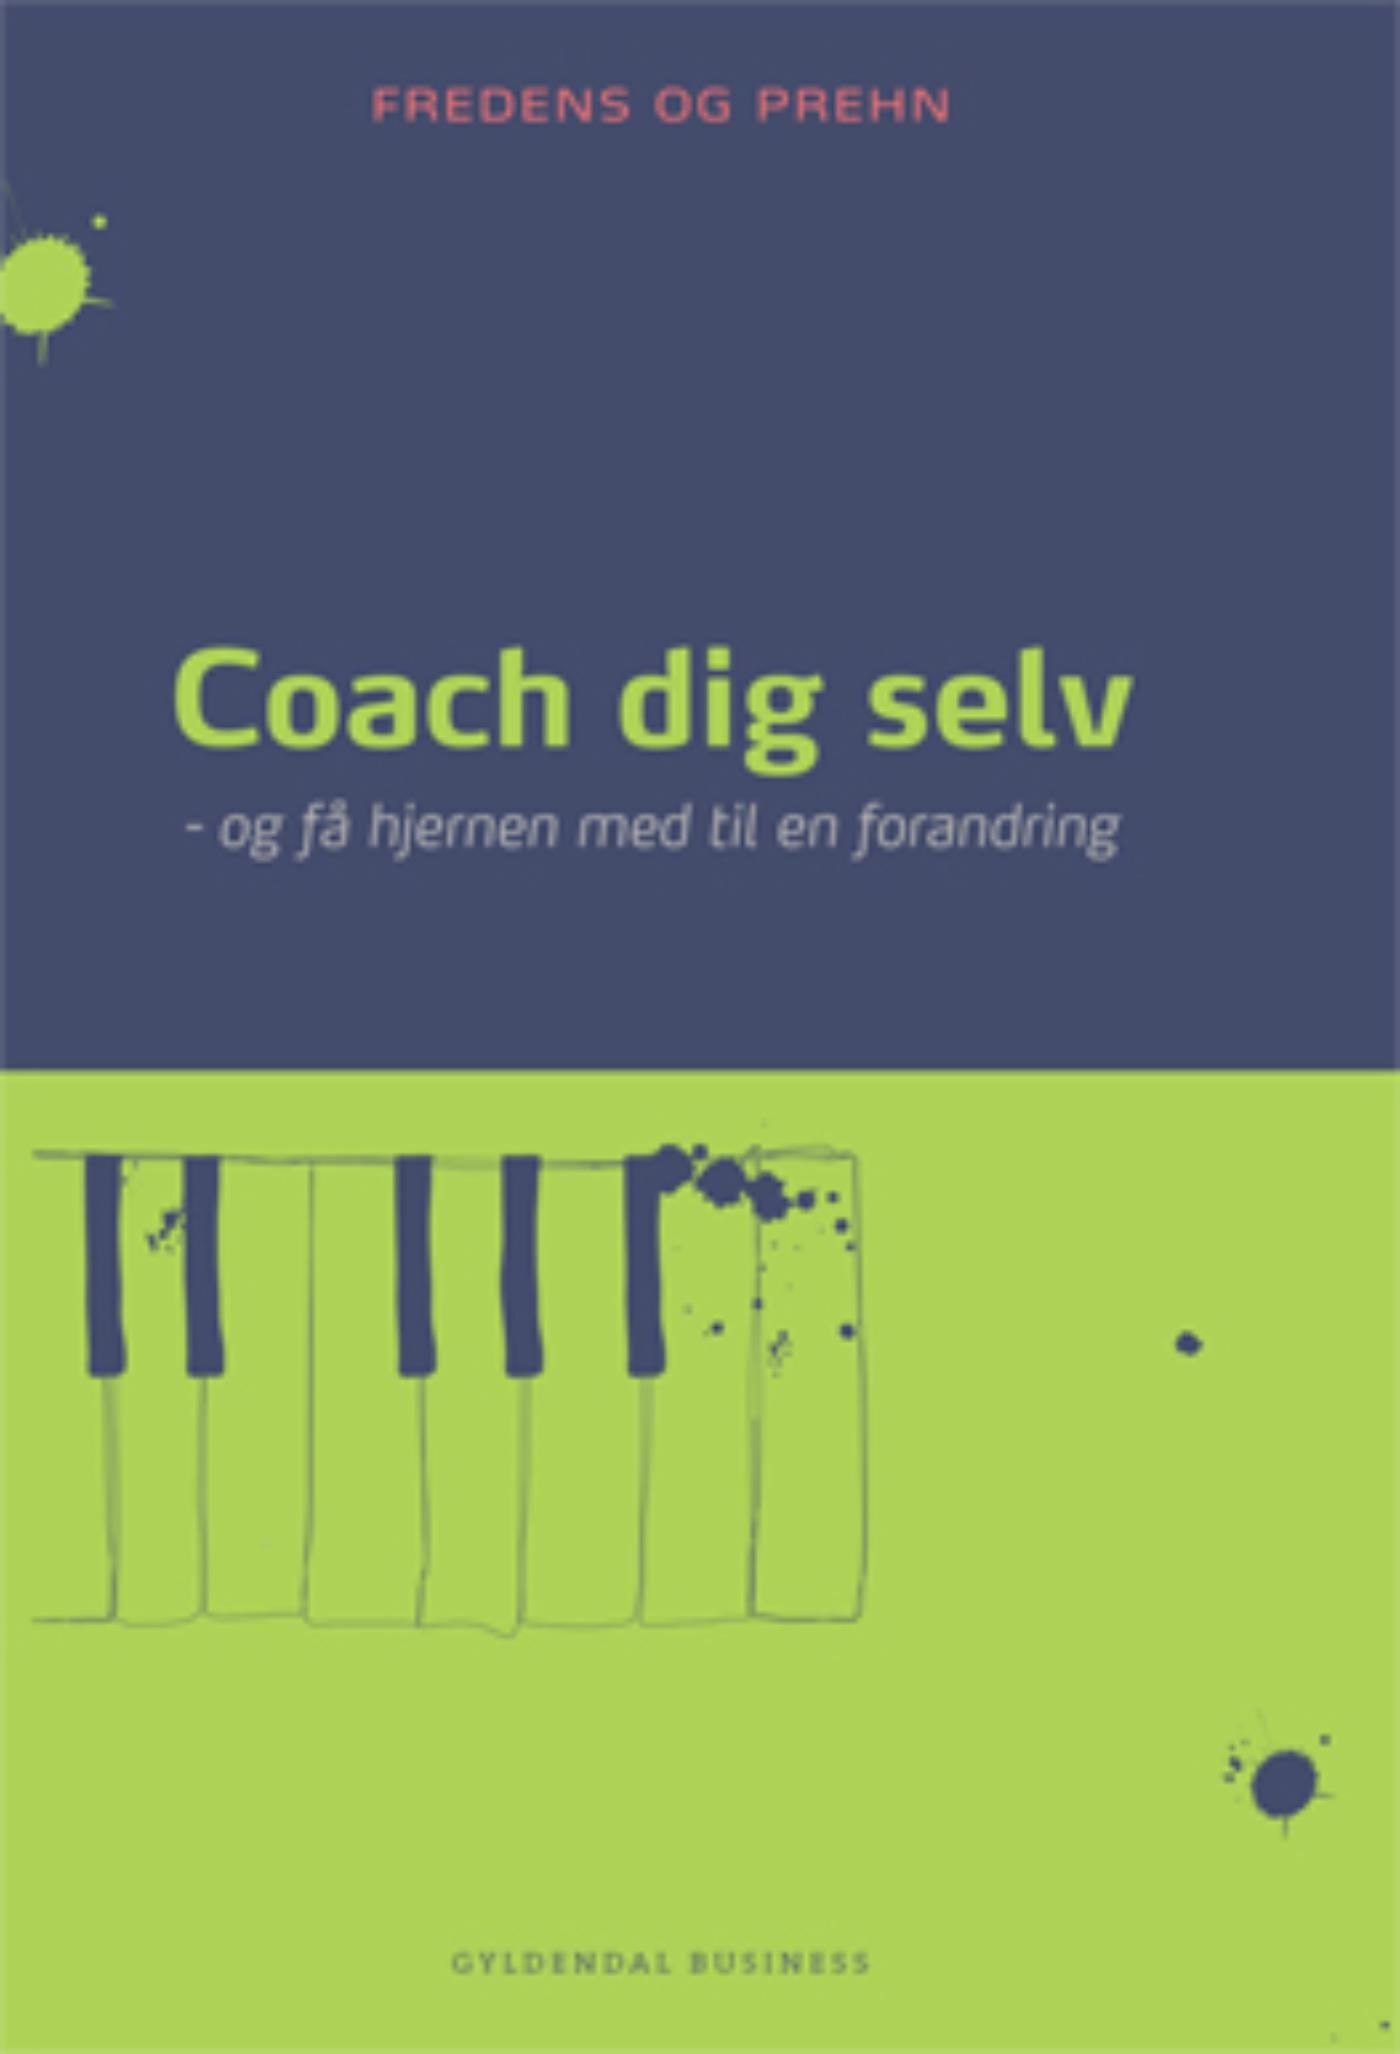 Coach dig selv, e-bog af Kjeld Fredens, Anette Prehn